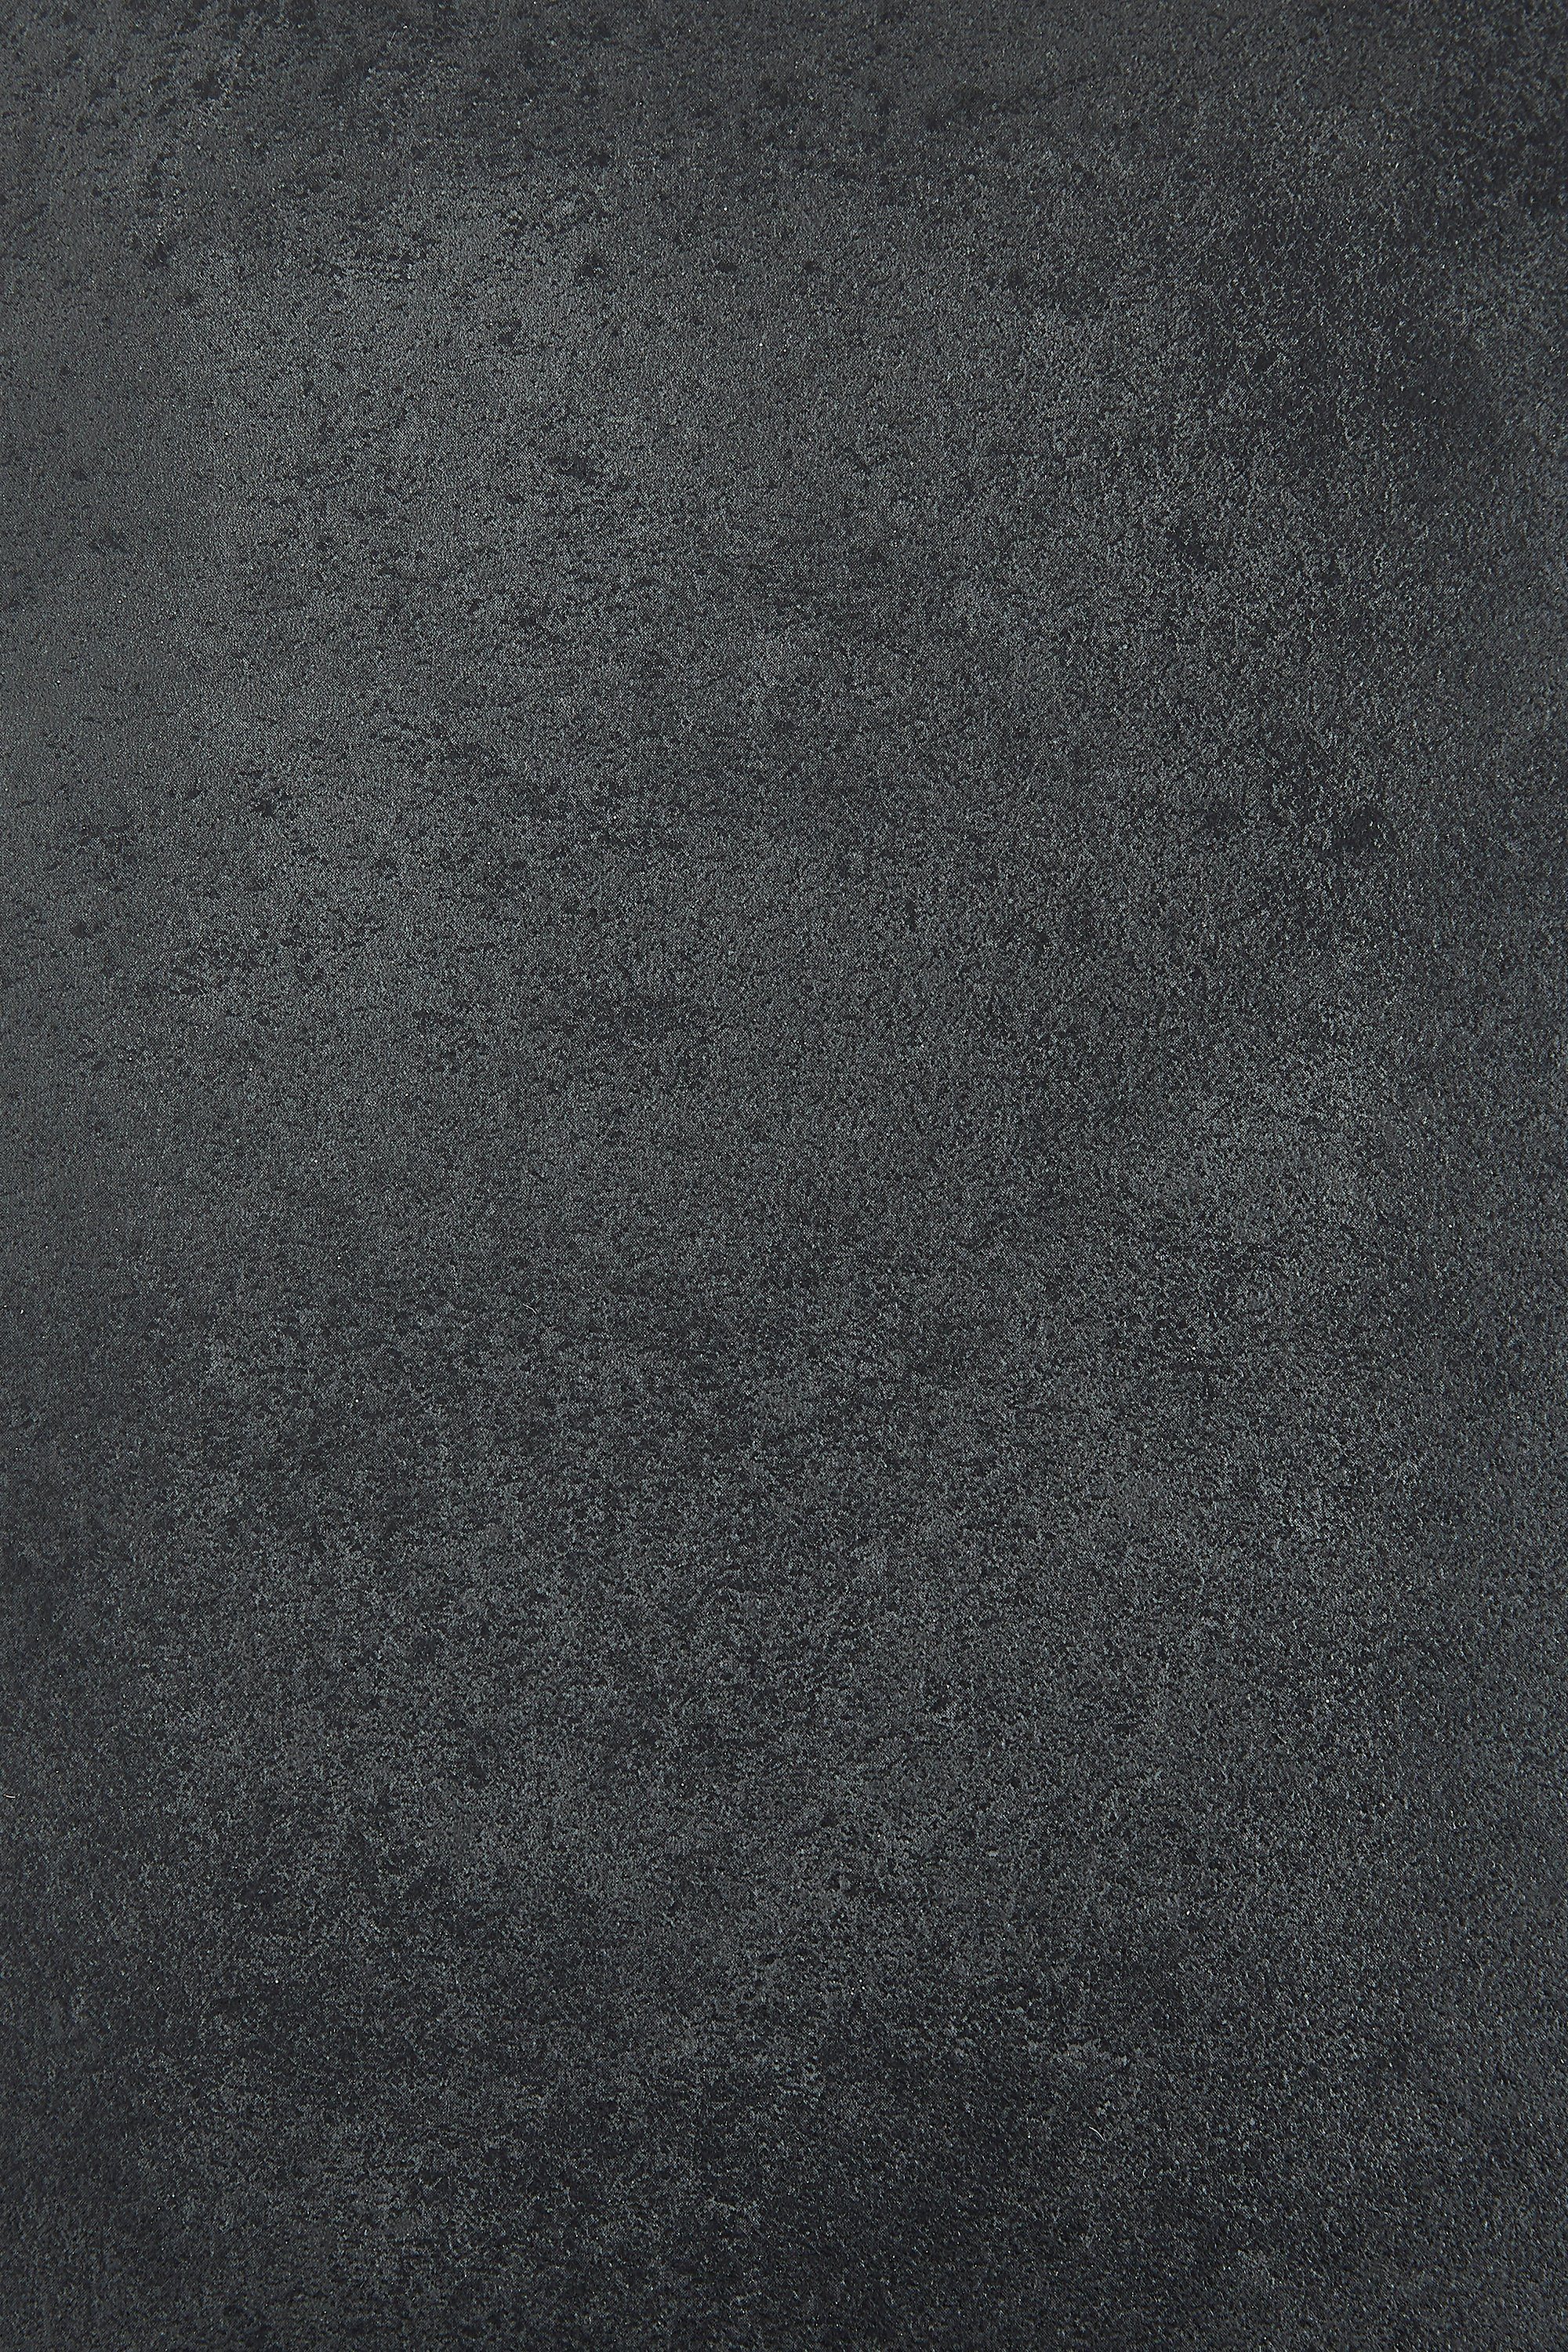 Andiamo Vinylboden Betonoptik Grau und Anthrazit, robust, pflegeleicht, Fußbodenheizung geeignet Allover Anthrazit